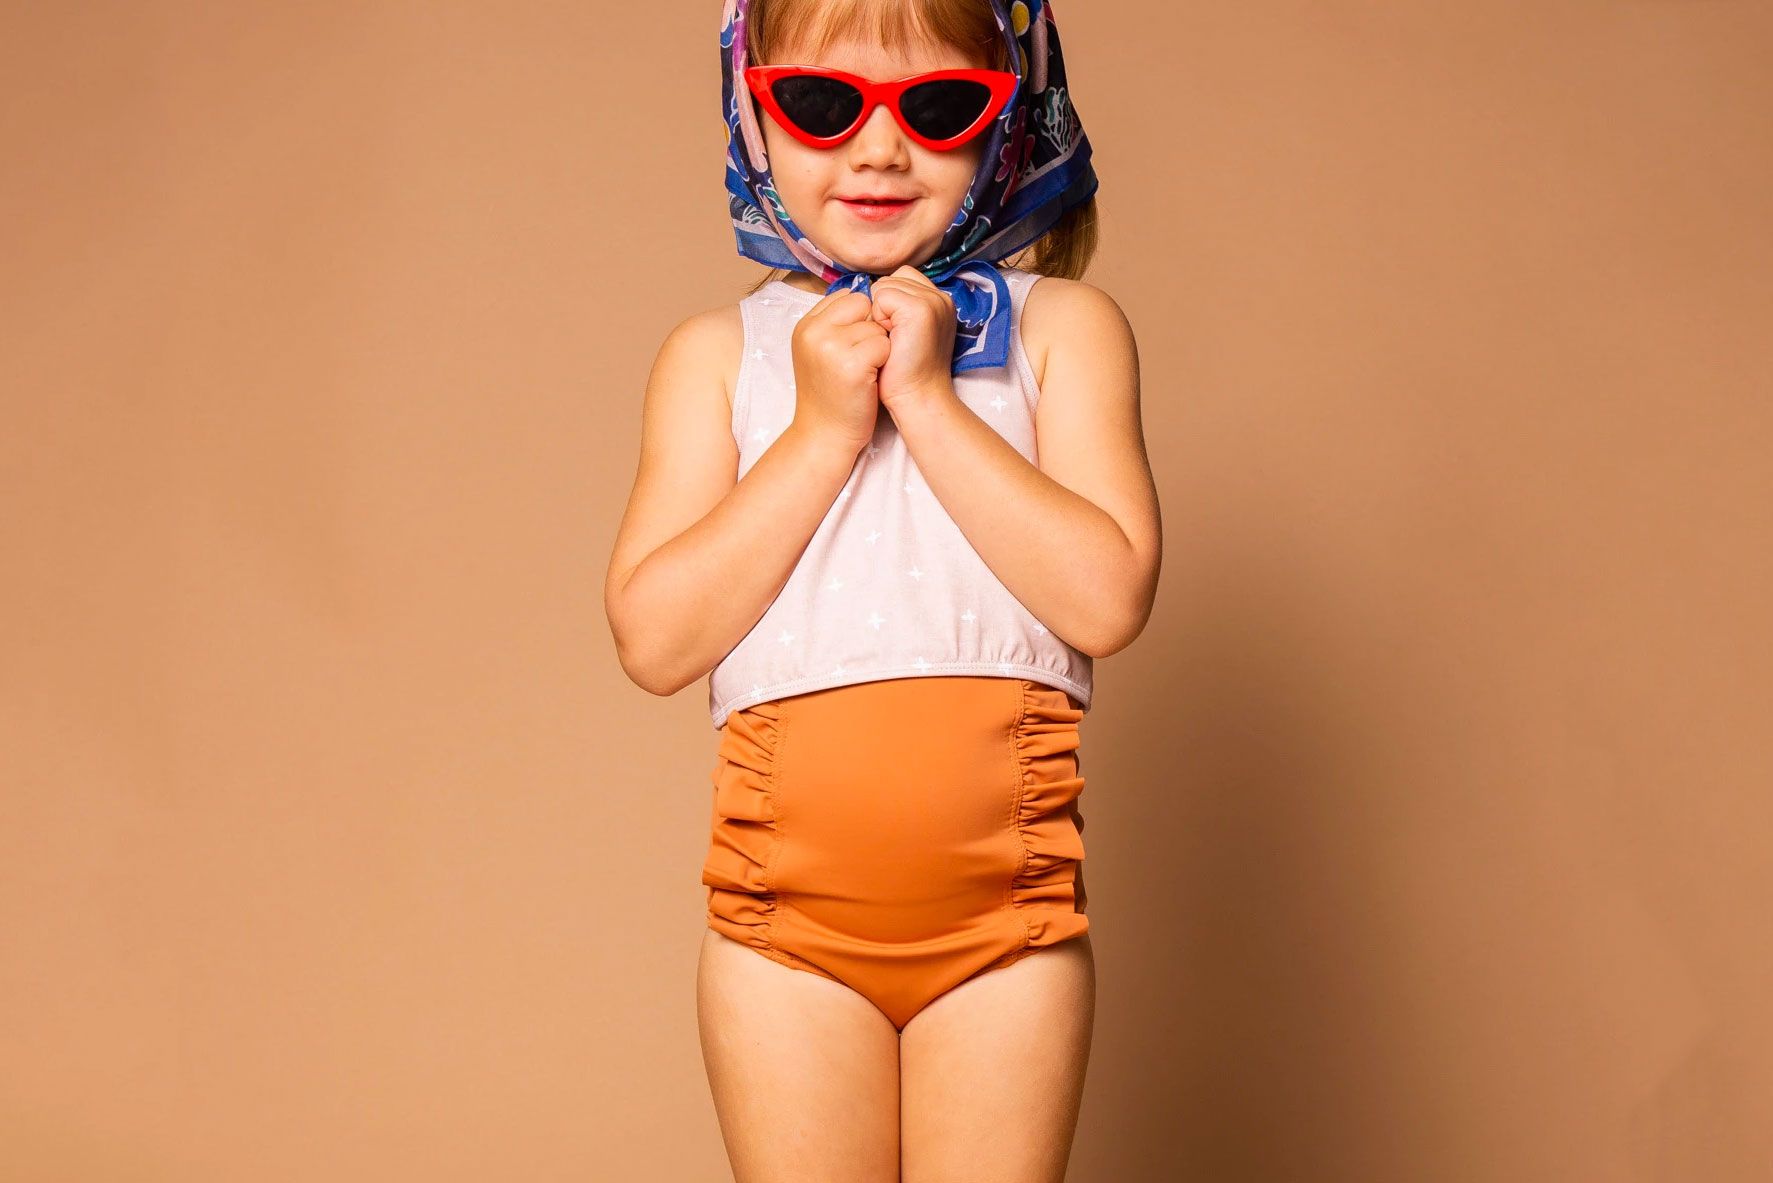 Kids Girls Toy Story 4 Swimwear Costume Bikini Swimsuit One Piece Bath Clothes 